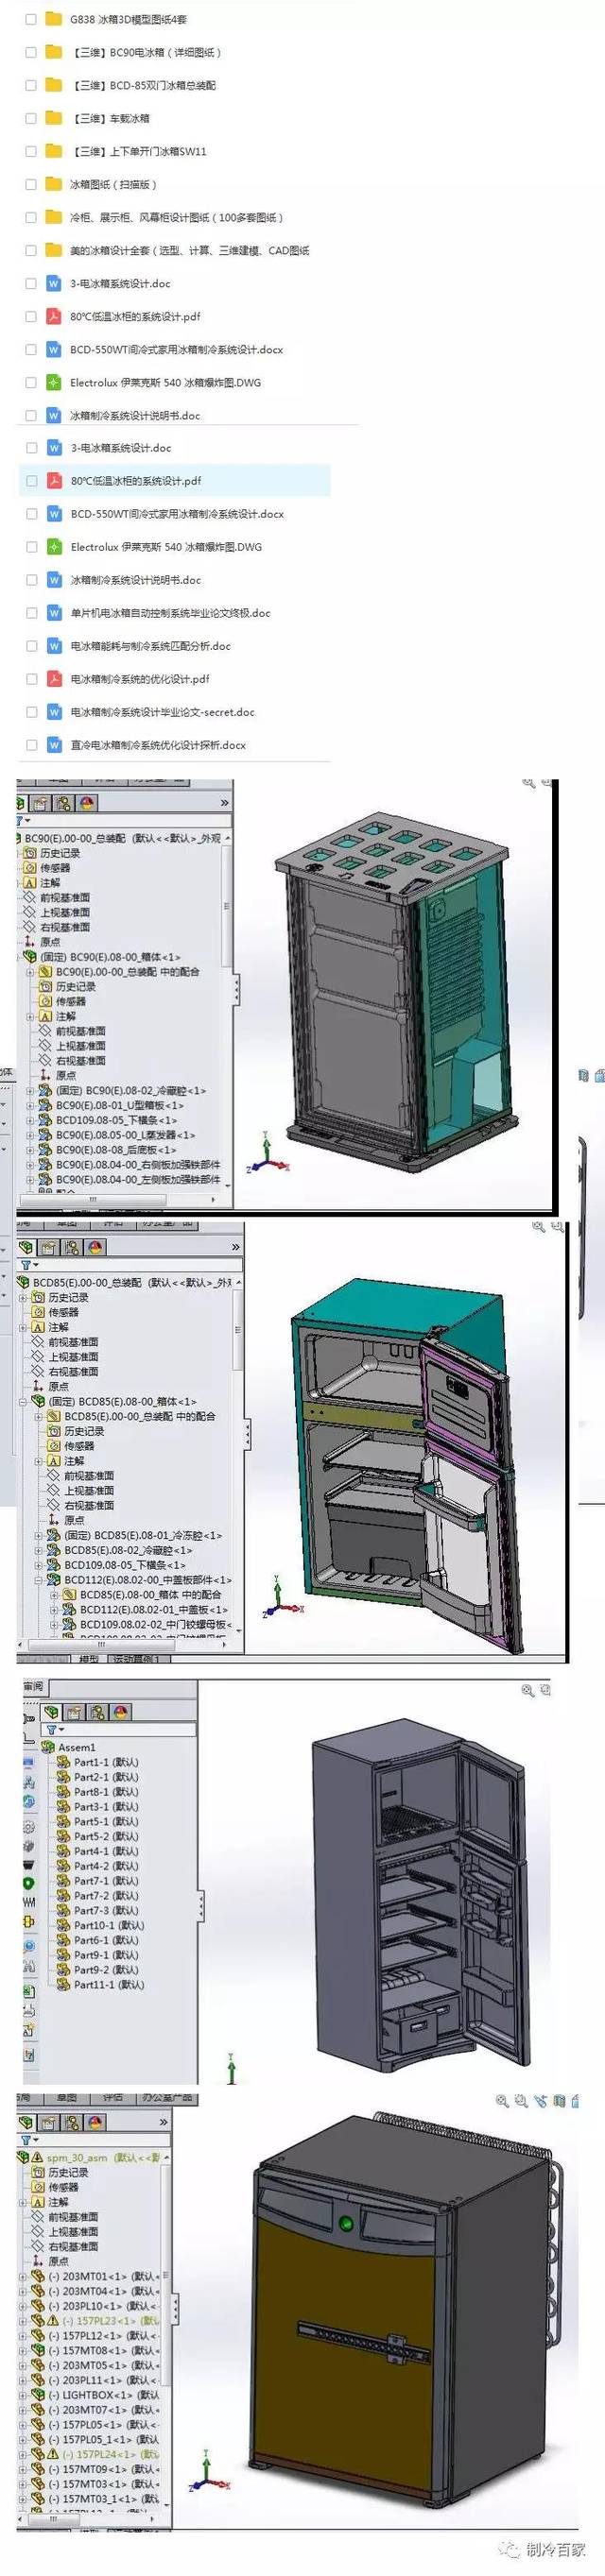 设计,计算,3d图纸等),各种冷柜100多套cad图纸,是做冰箱冷柜研发设计